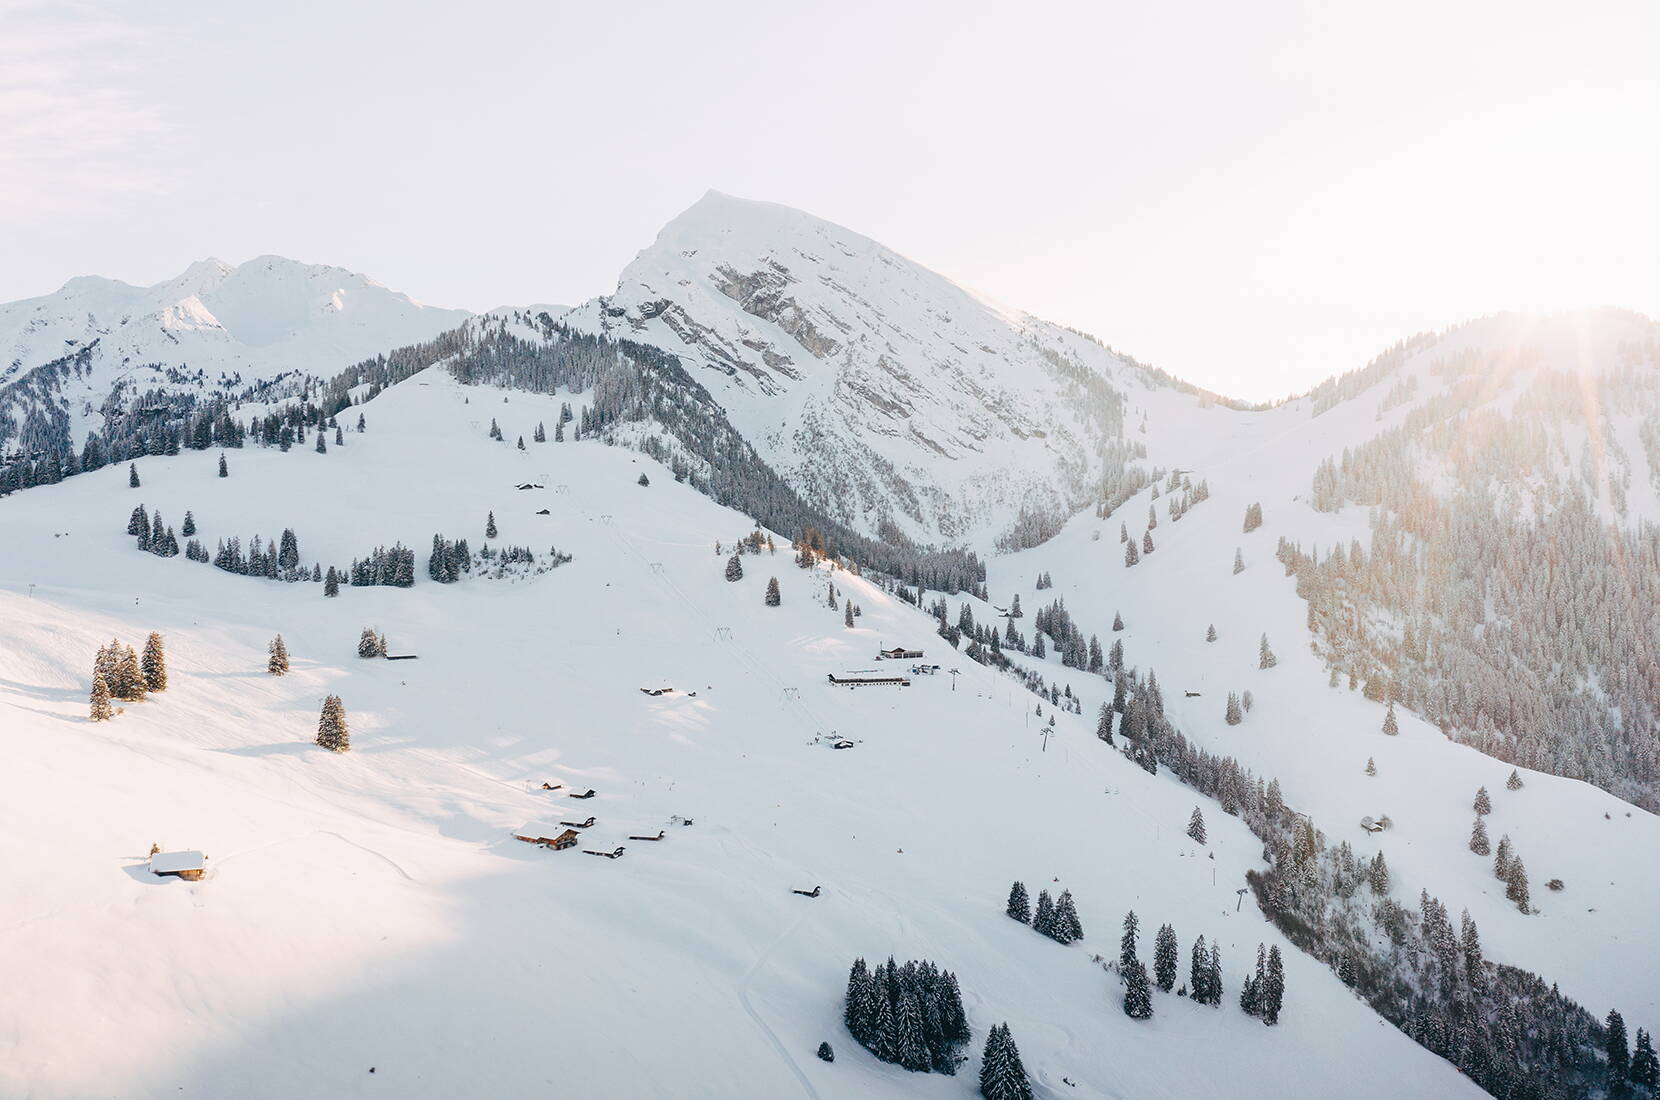 Familienausflug Wiriehorn. Geniesse einen wunderschönen Schneesport-Tag im Familien-Skigebiet Wiriehorn. Nebst 17,5 km. Pistenvergnügen erwarten dich zwei präparierte Schlittelwege und familienfreundliche Verpflegungsangebote im Berghotel.